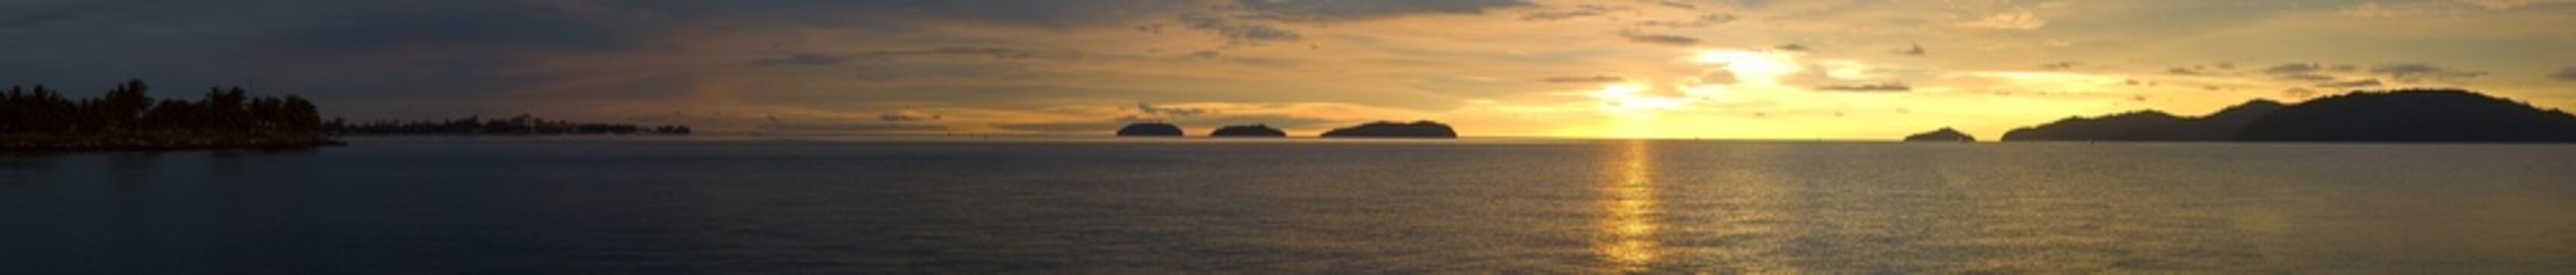 Fototapeta A ultra wide panorama view of a golden sunset ocean